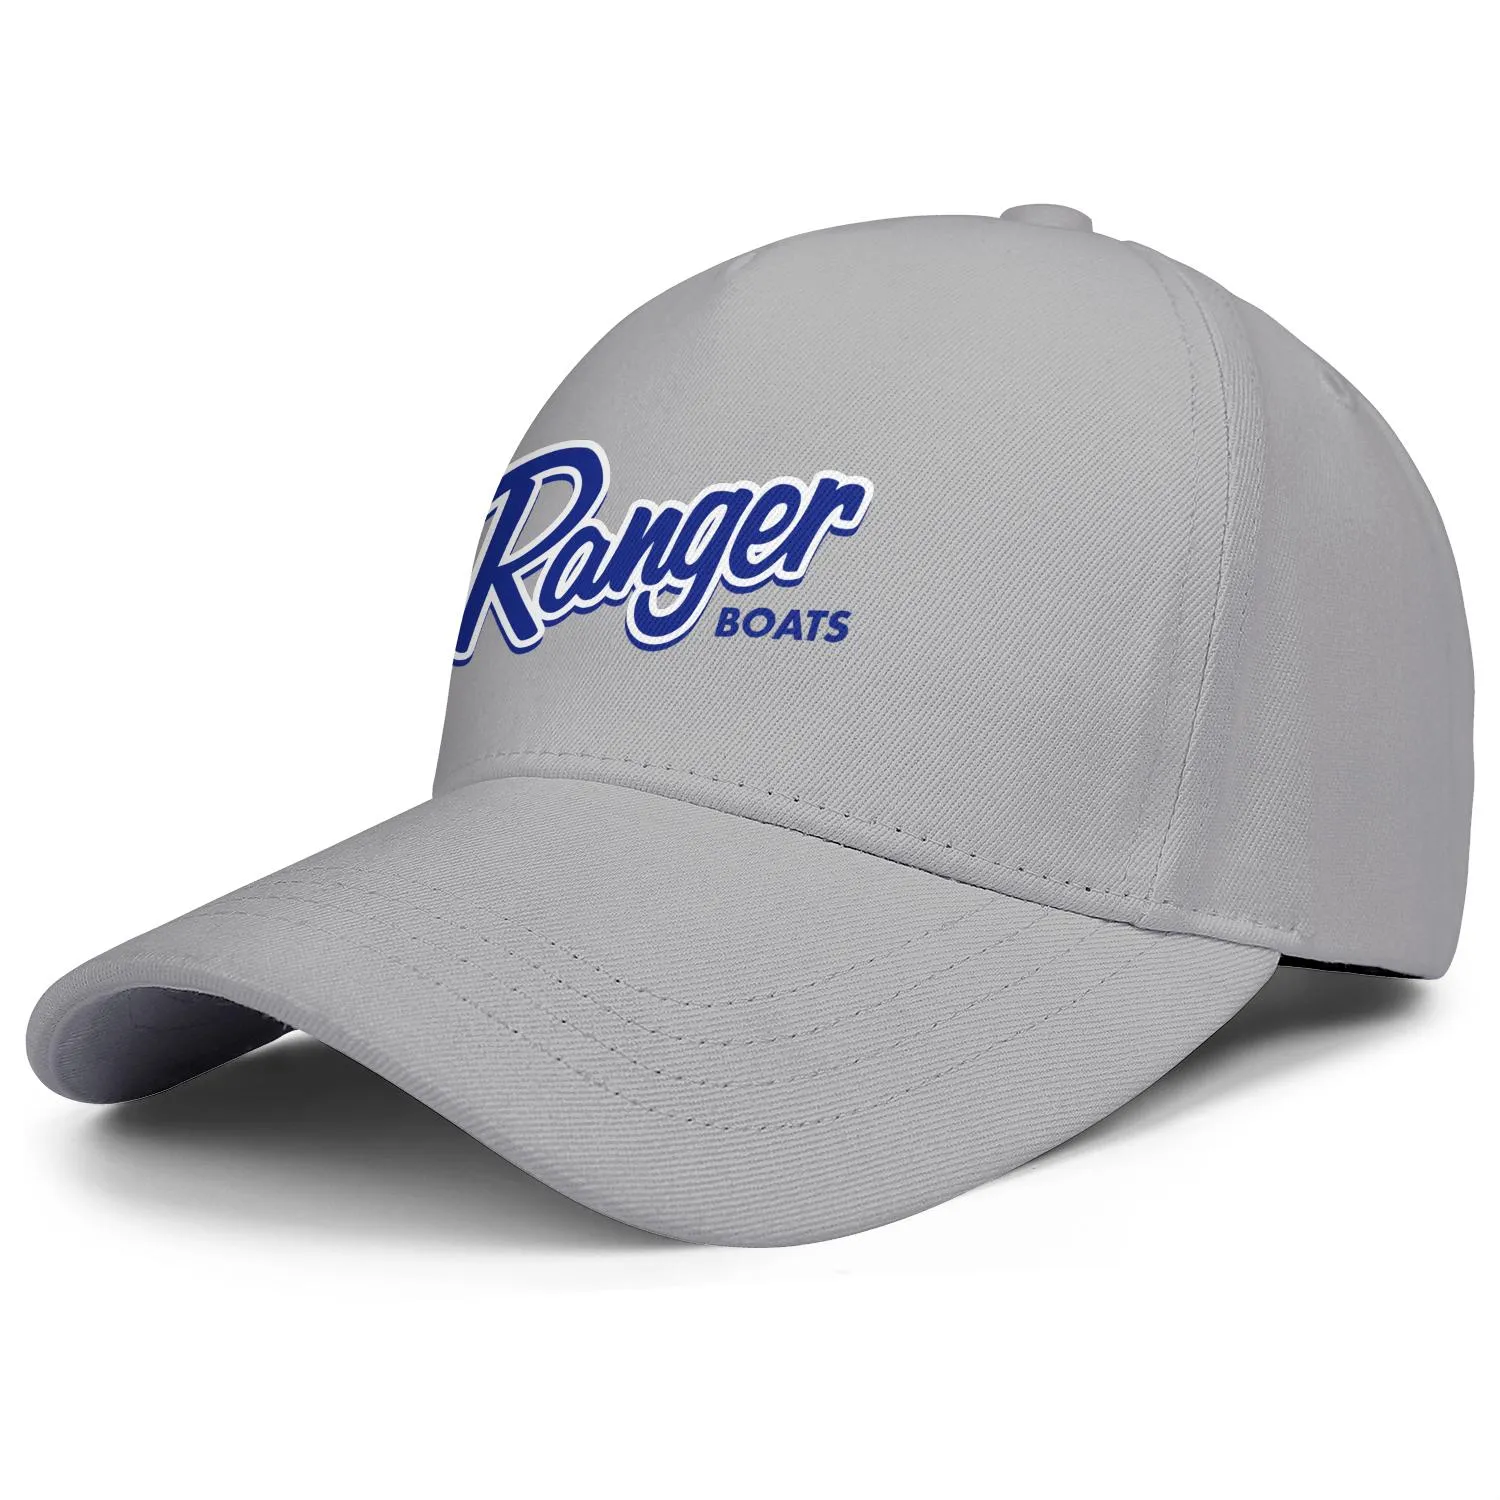 Ranger Boats Logo Est voor mannen en vrouwen verstelbare Trucker Cap Design Vintage gepersonaliseerde trendy honkbalhats nog steeds gebouwd Tge6517659